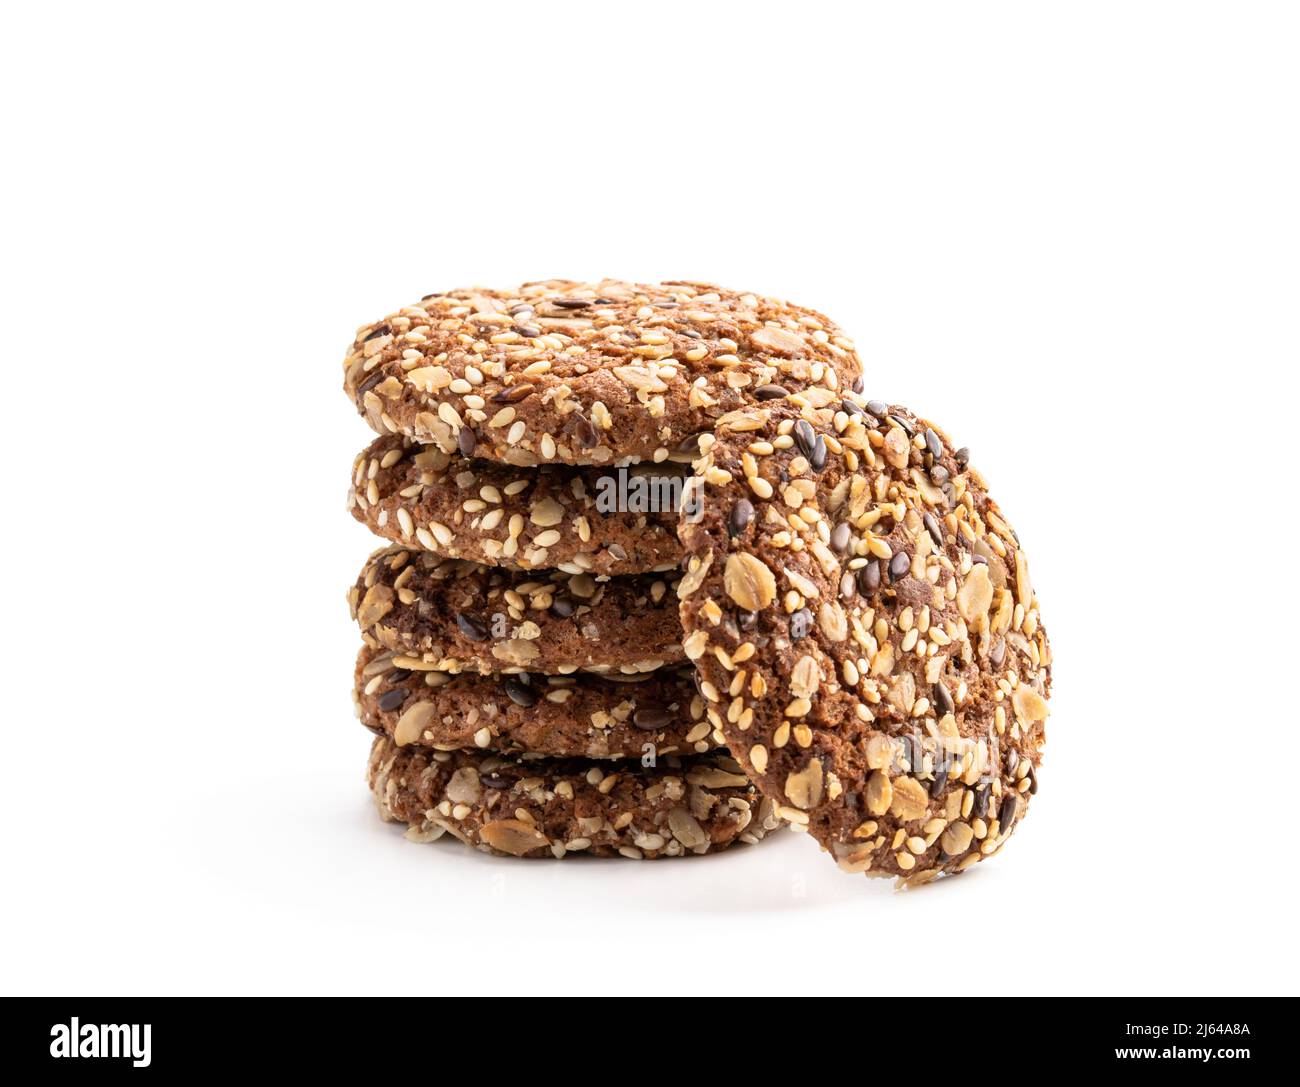 Gesunde Fitness-Kekse aus Sonnenblumenkernen und Sesamsamen mit Leinsamen  isoliert auf Weiß Stockfotografie - Alamy